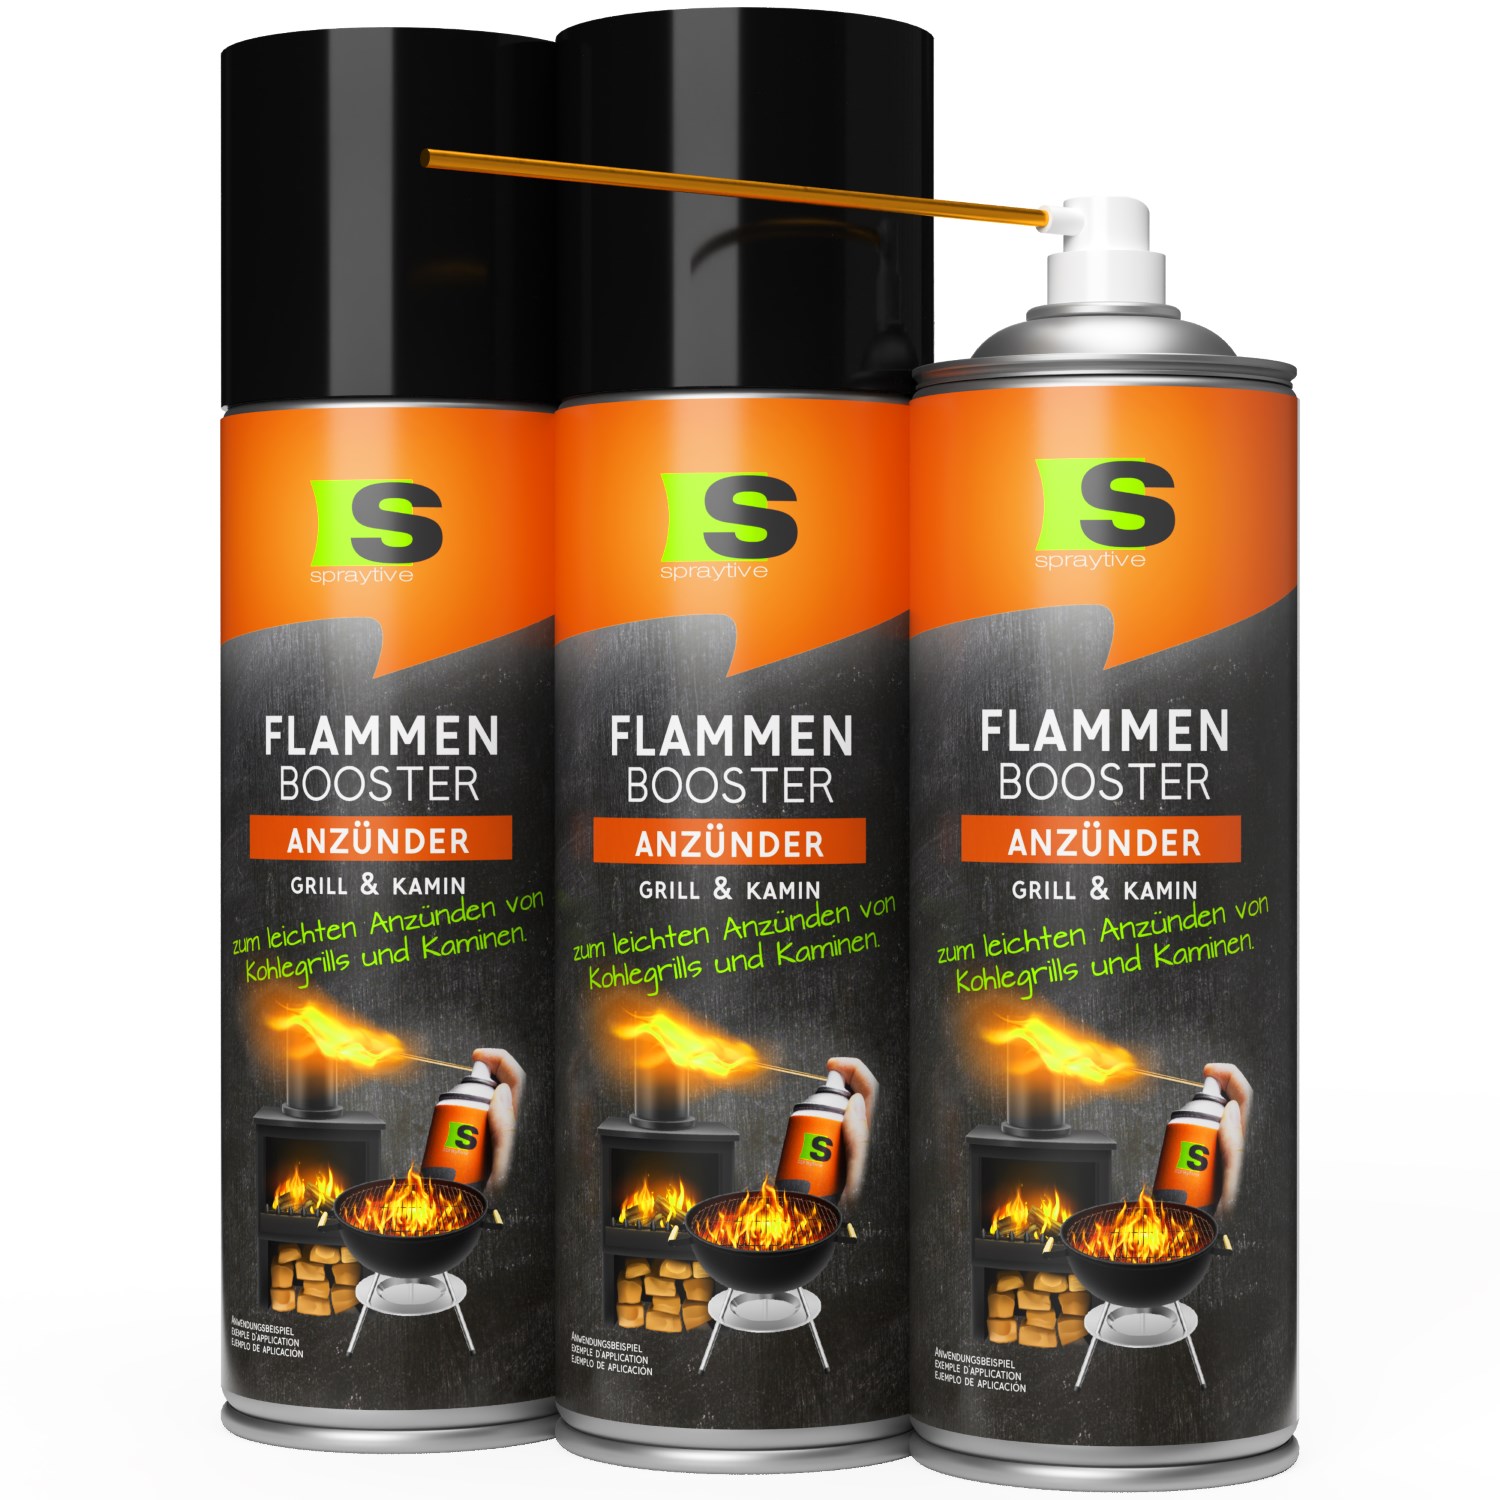 3 x 500ml Flammen-Booster Grill- & Kaminanzünder - Für Kohlegrill, Kamin & Feuerkorb